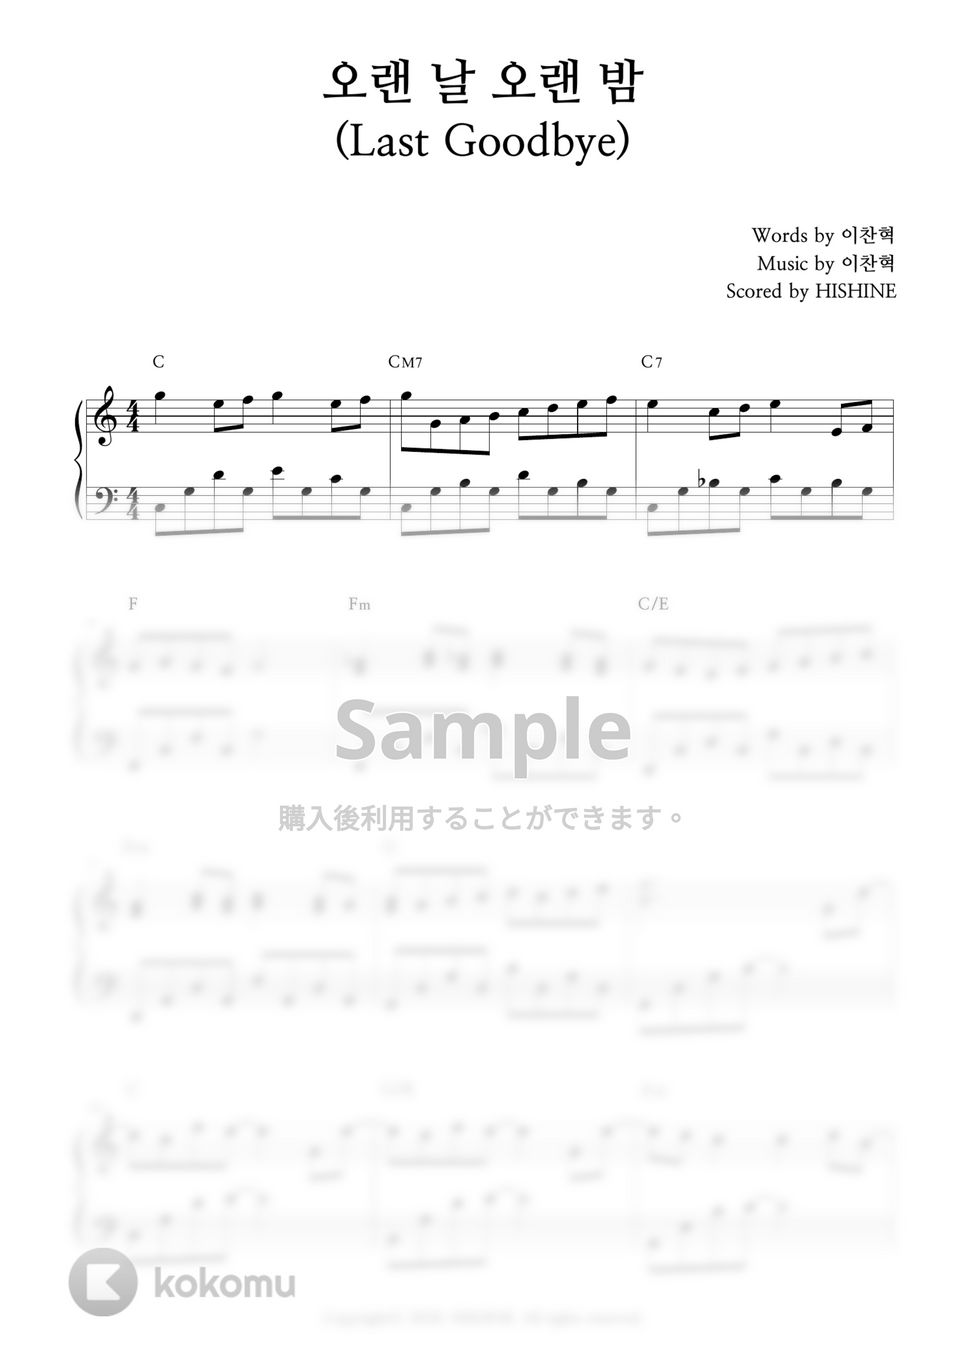 AKMU(悪童ミュージシャン) - Last Goodbye by HISHINE